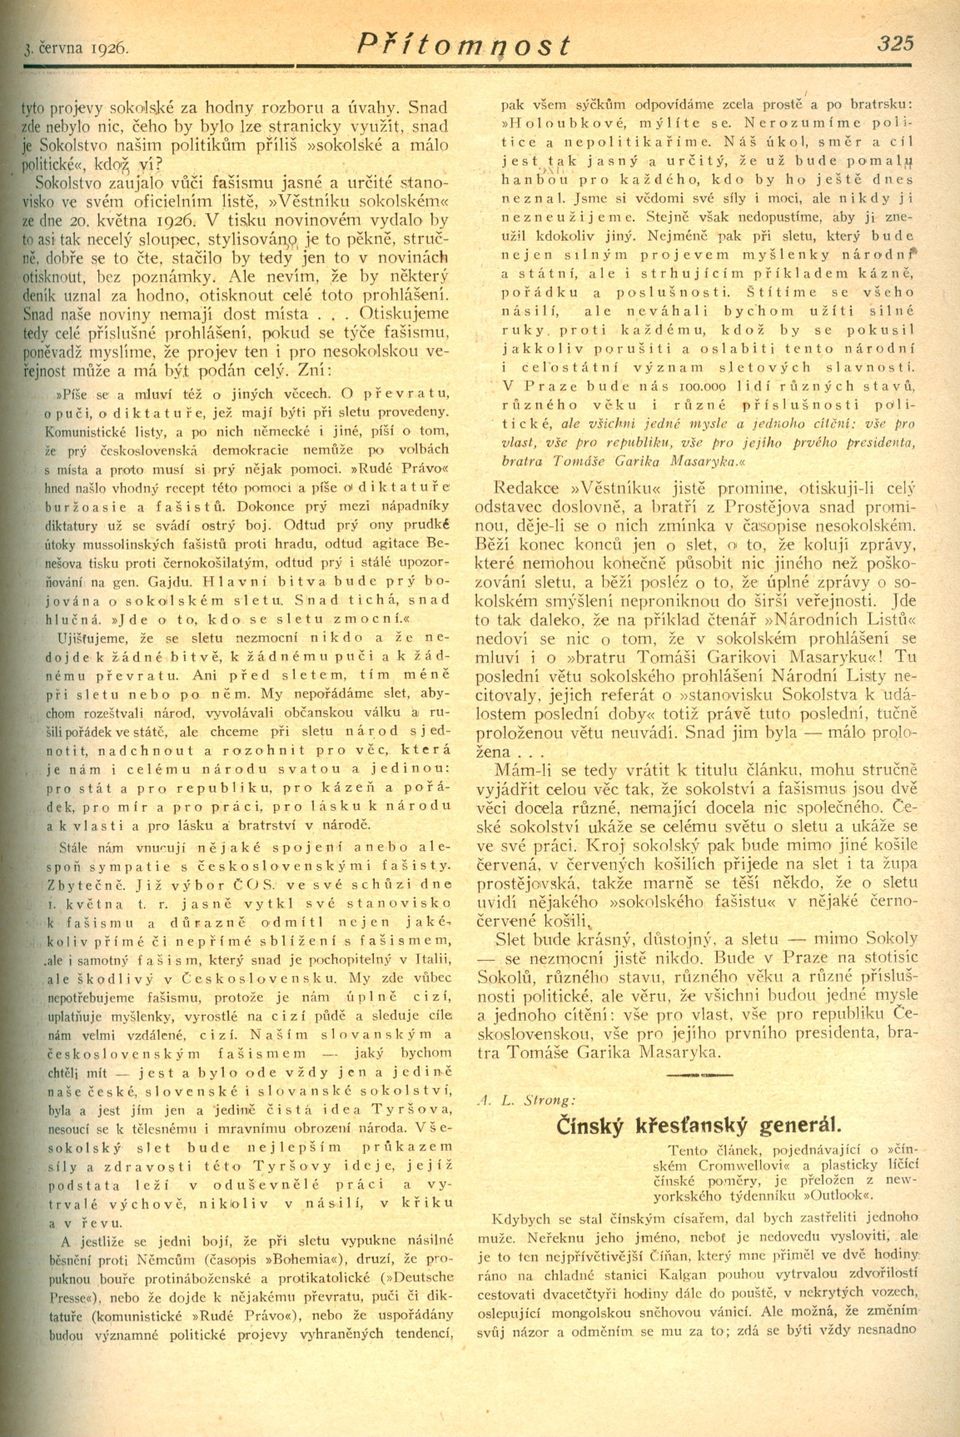 Sokolstvo zaujaló vuci fašismu jasné a urcité stanoviskove svém oficielním liste,»vestníku sokolském«ze dne 20. kvetna 1926.